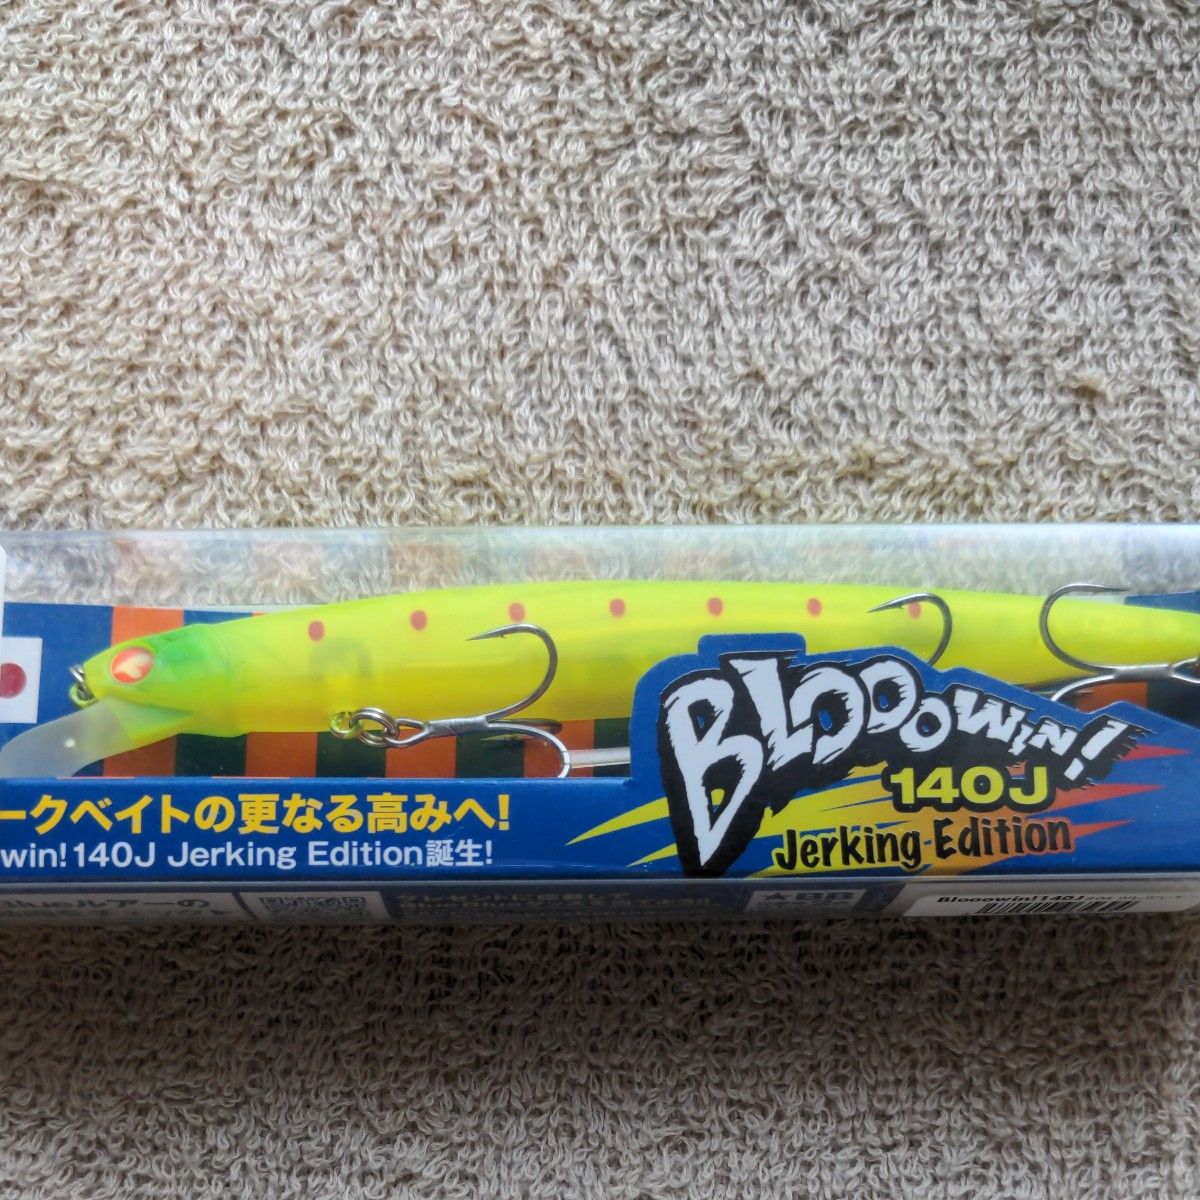 特価 BlueBlue BLOOOWIN140J Narage50 3本セット 応募券付 ブルーブルー ブローウィン ナレージ